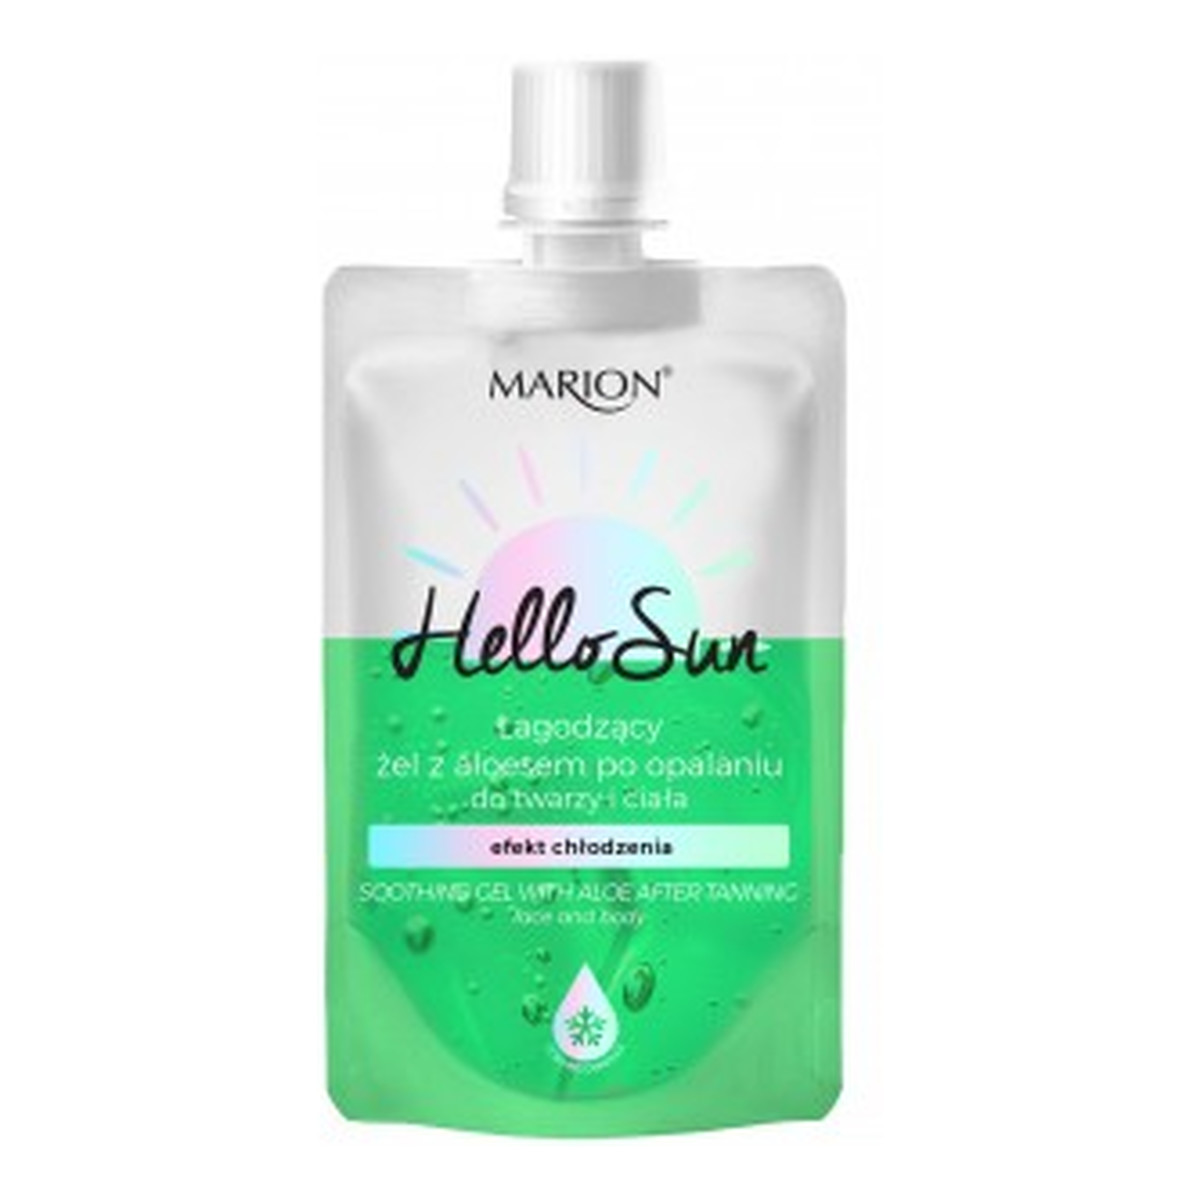 Marion Hello Sun łagodzący Żel z aloesem po opalaniu do twarzy i ciała z efektem chłodzenia 50ml